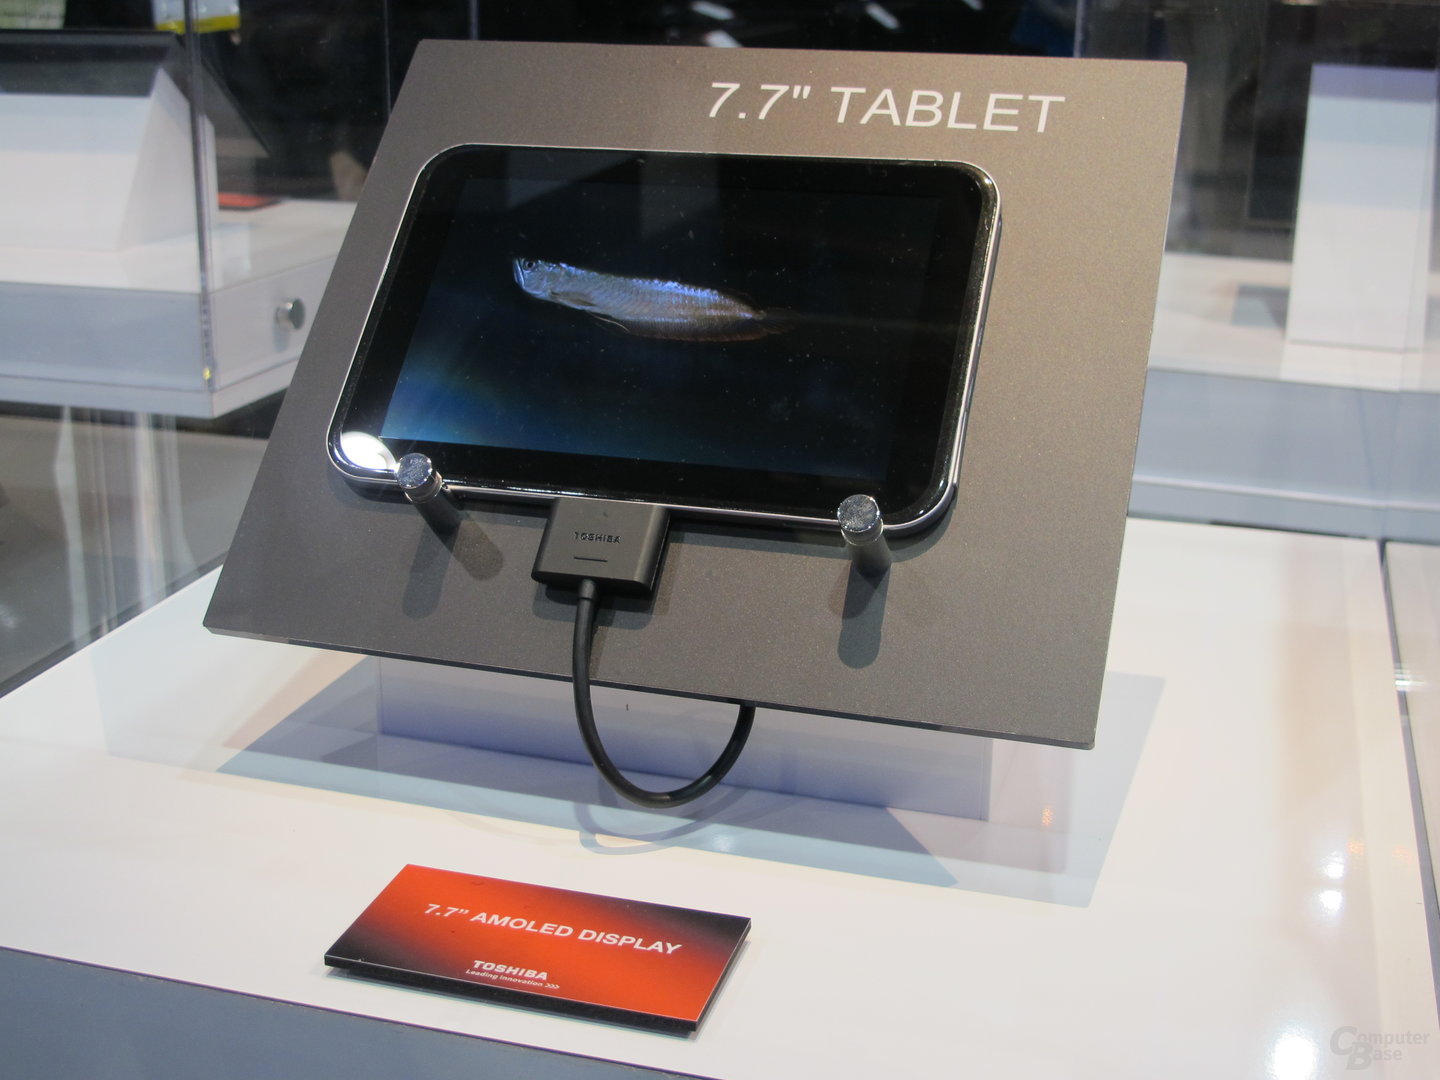 Toshiba 7,7“ Tablet